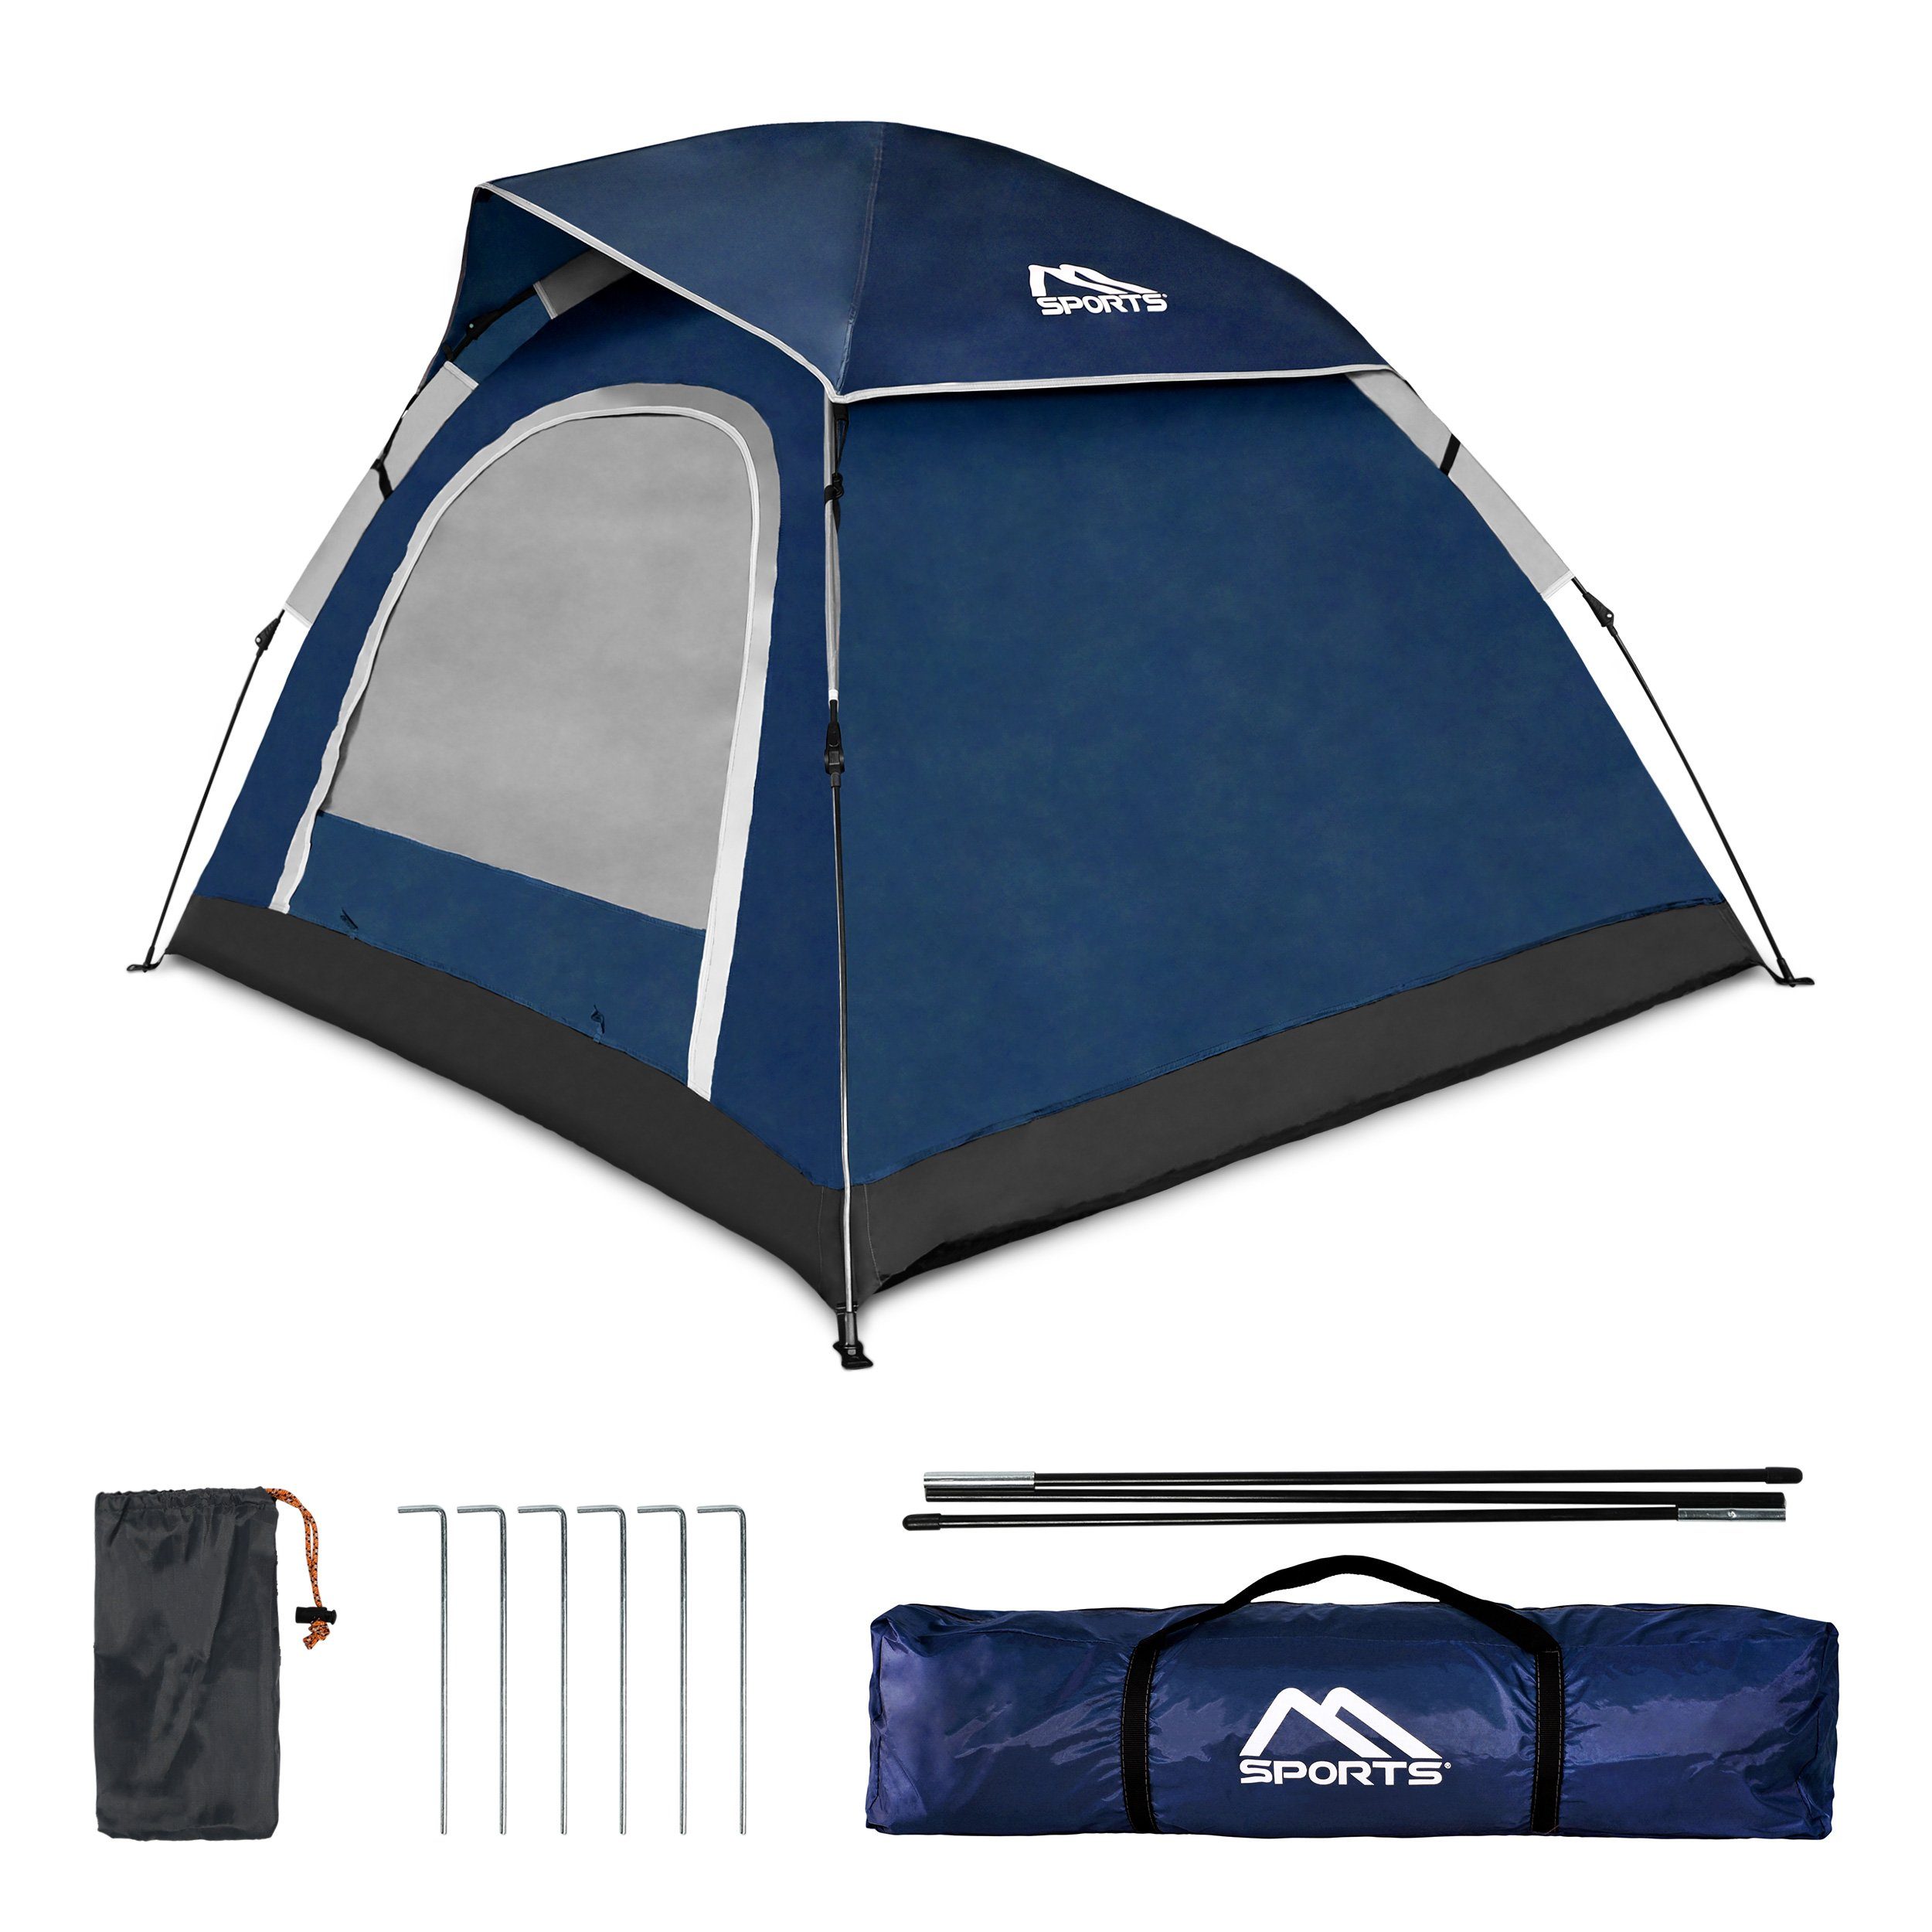 Igluzelt Kuppelzelt Zelt Campingzelt Outdoor Camping 3 Personen blau/grau 